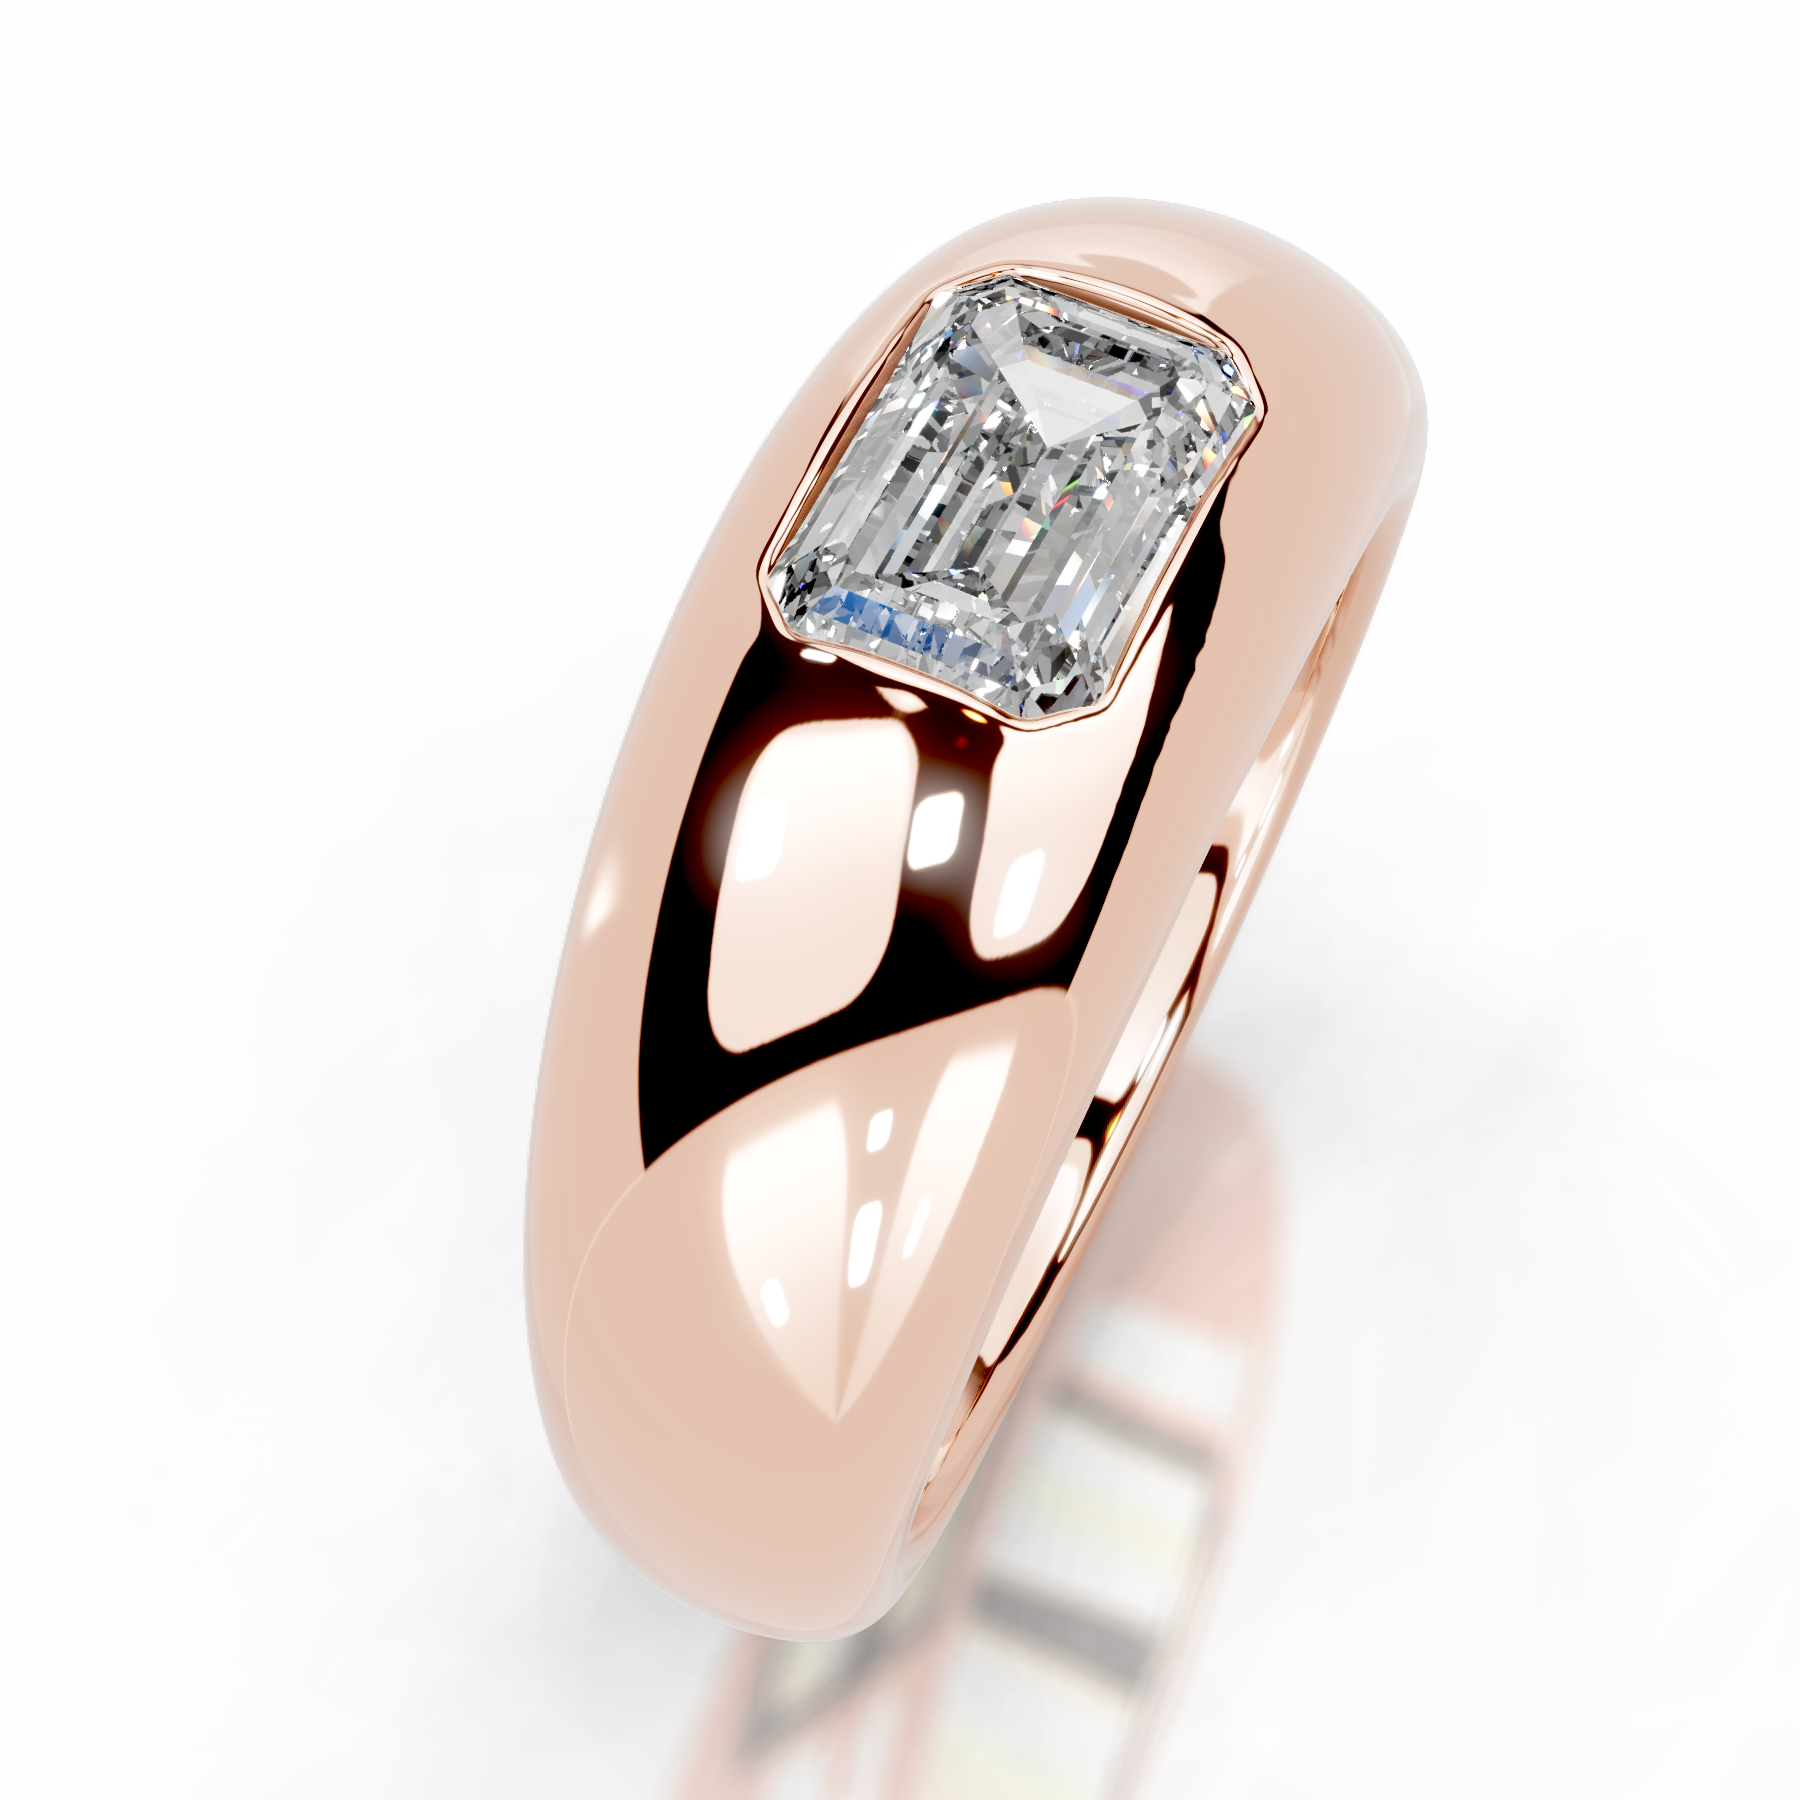 Amari Diamond Engagement Ring   (1 Carat) -14K Rose Gold